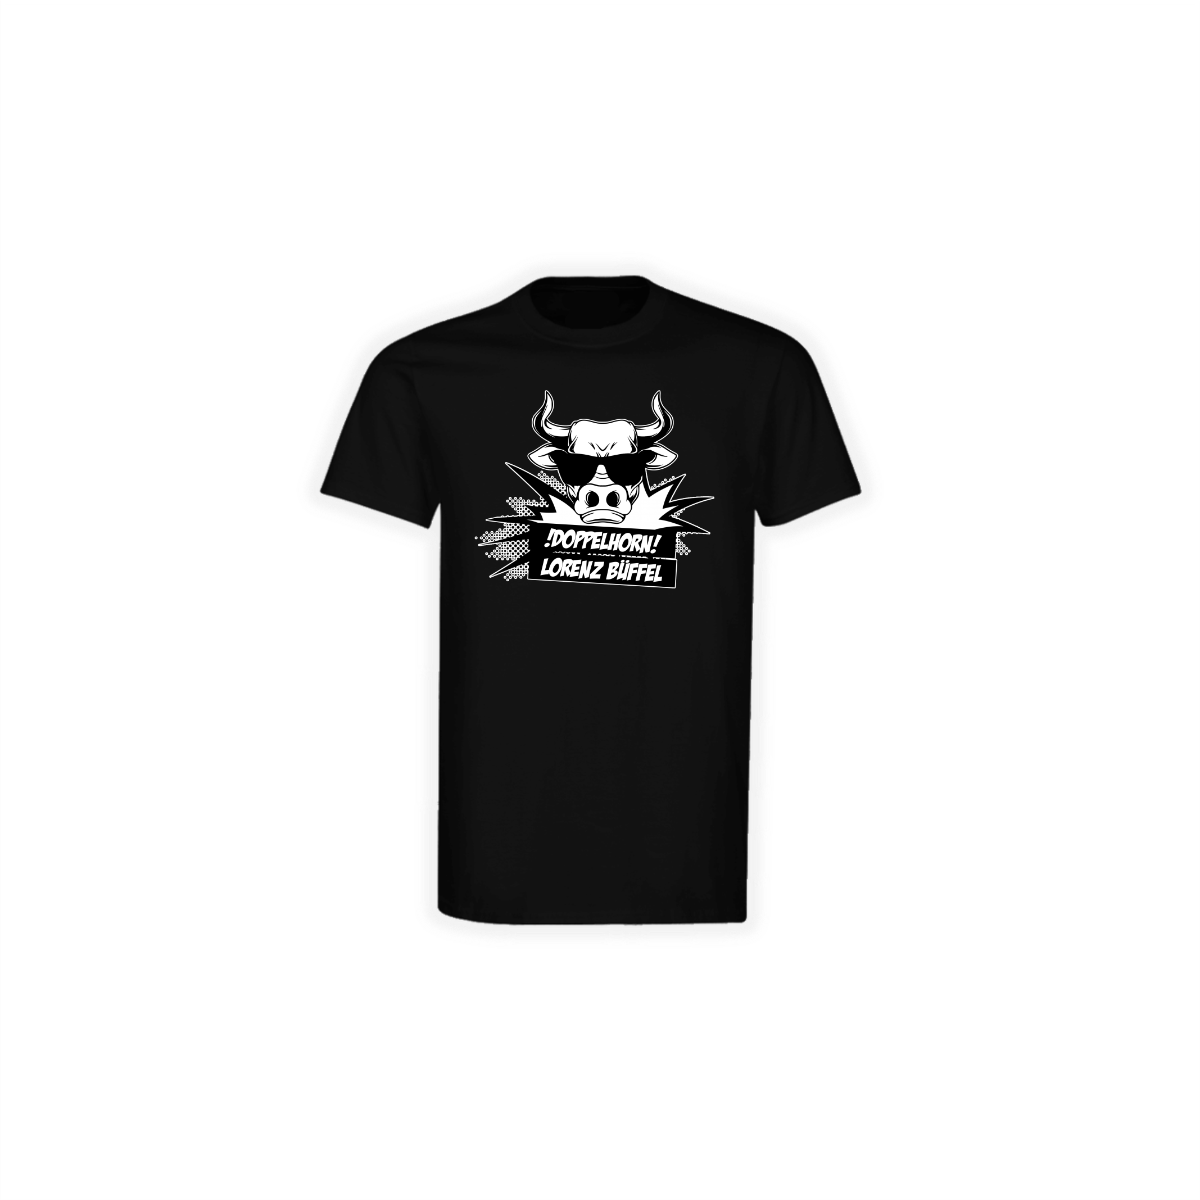 T-Shirt "DOPPELHORN" schwarz